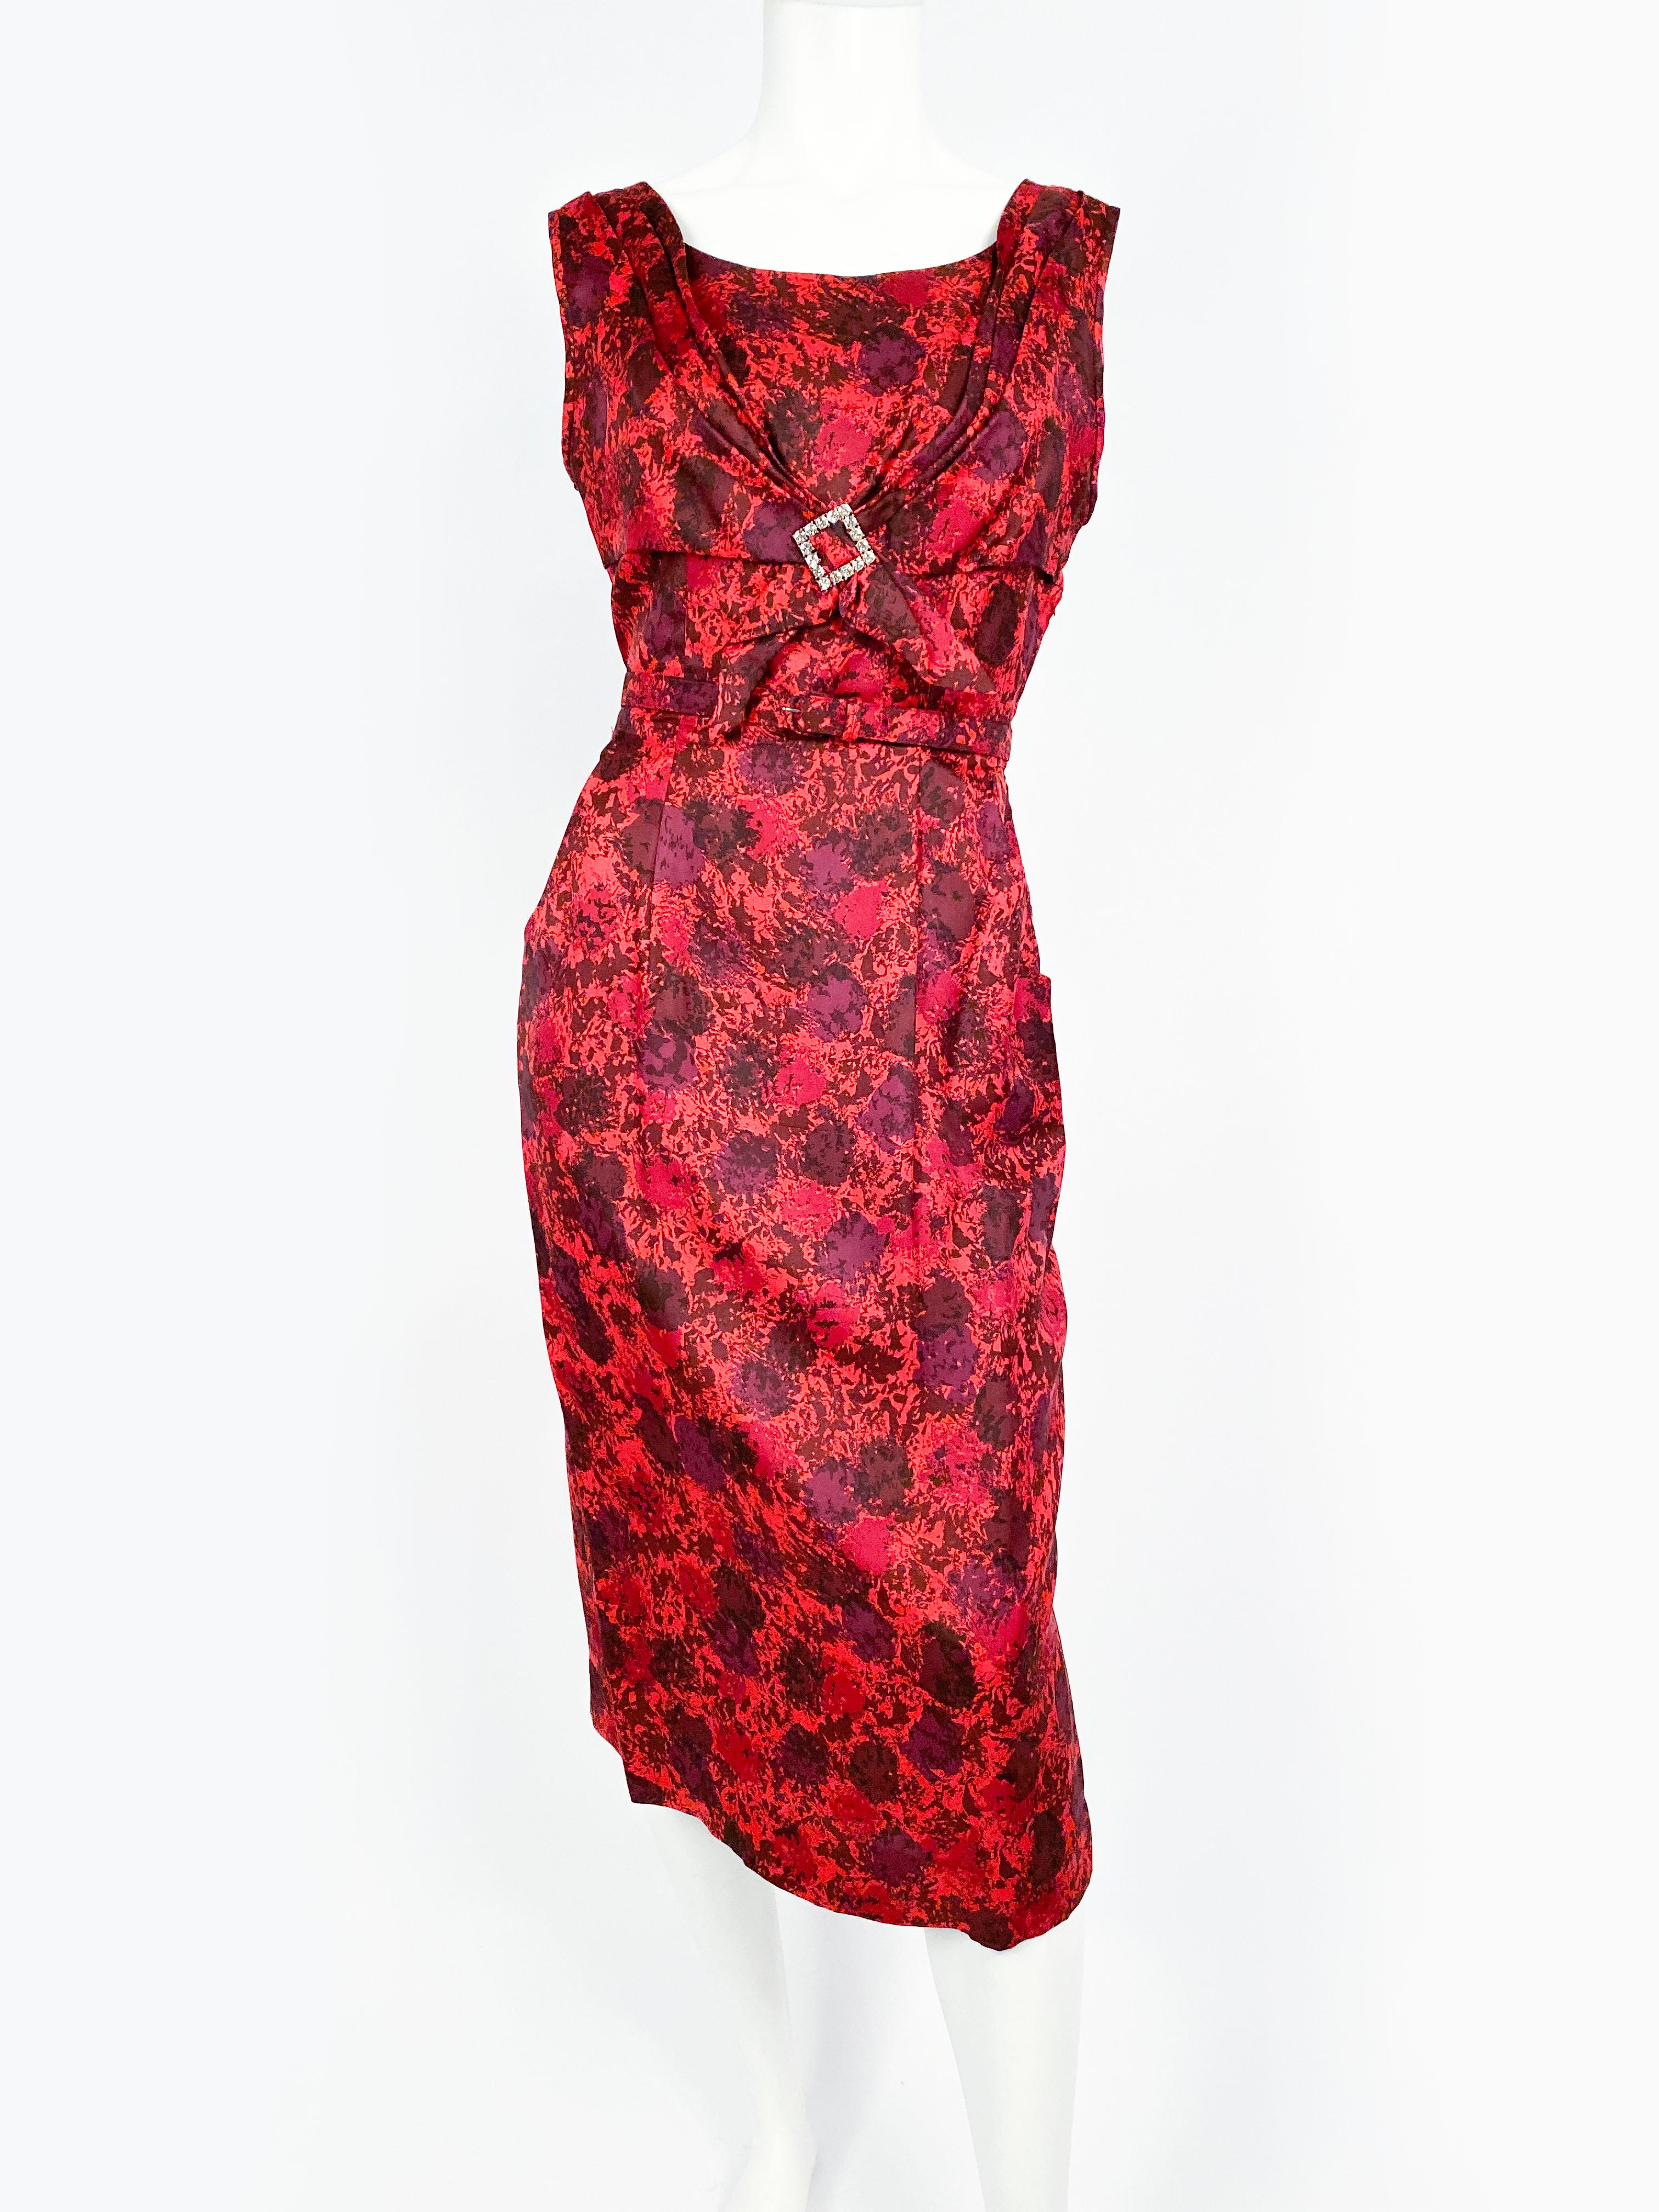 rotes Seidenkleid aus den 1950er Jahren mit einem floral-impressionistischen Druck in verschiedenen Rottönen. Das Mieder hat einen Rundhalsausschnitt und eine aufgesetzte Raffung, die mit einer strassbesetzten Schnalle abgeschlossen ist. Der Rock